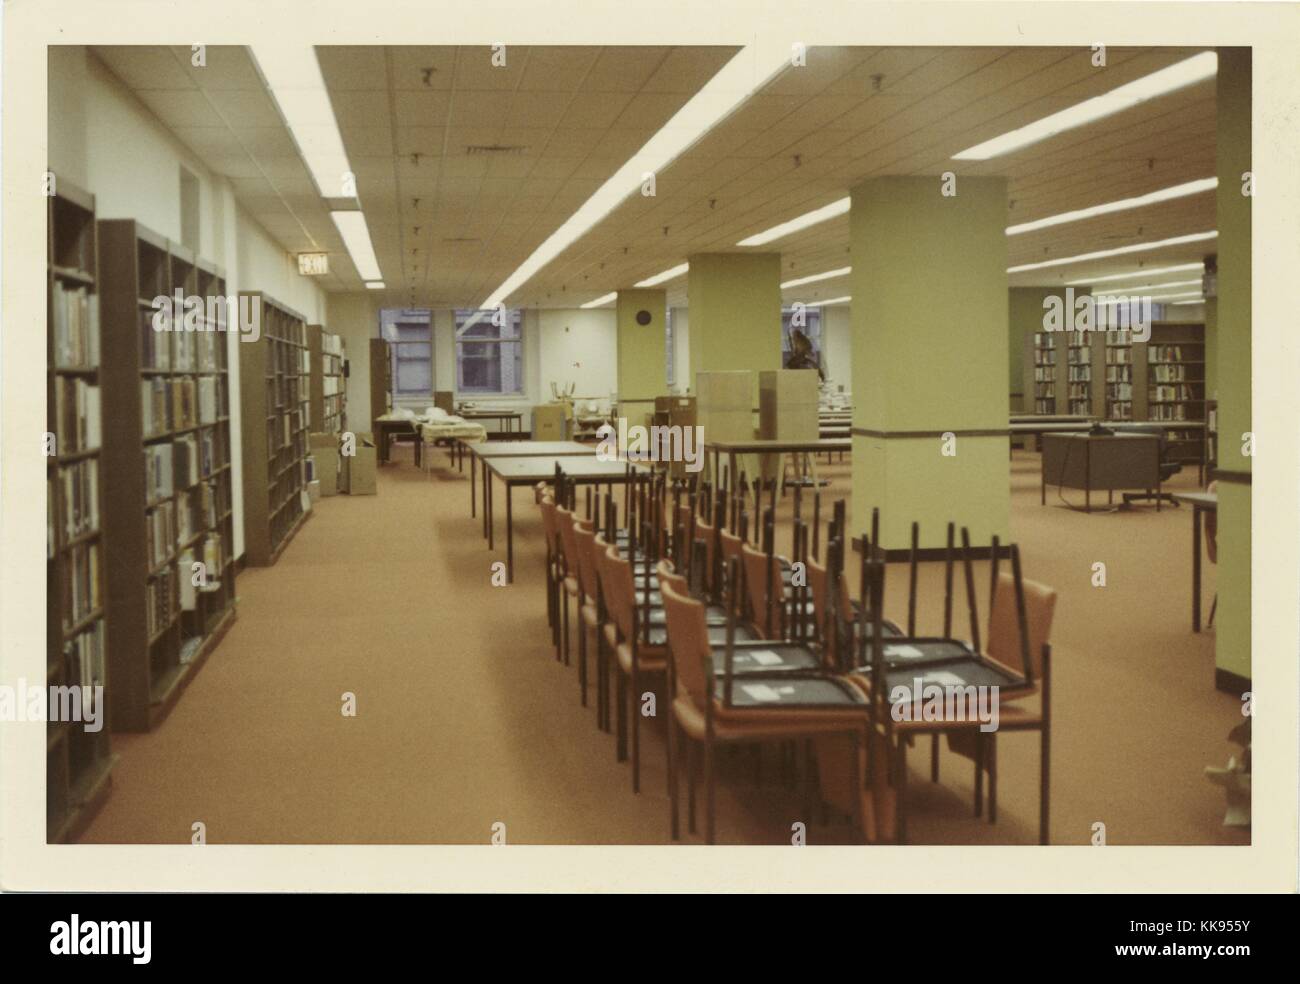 Fotografia a colori di una grande libreria sala lettura, sedie, la città di New York, New York, 1970. Dalla Biblioteca Pubblica di New York. Foto Stock